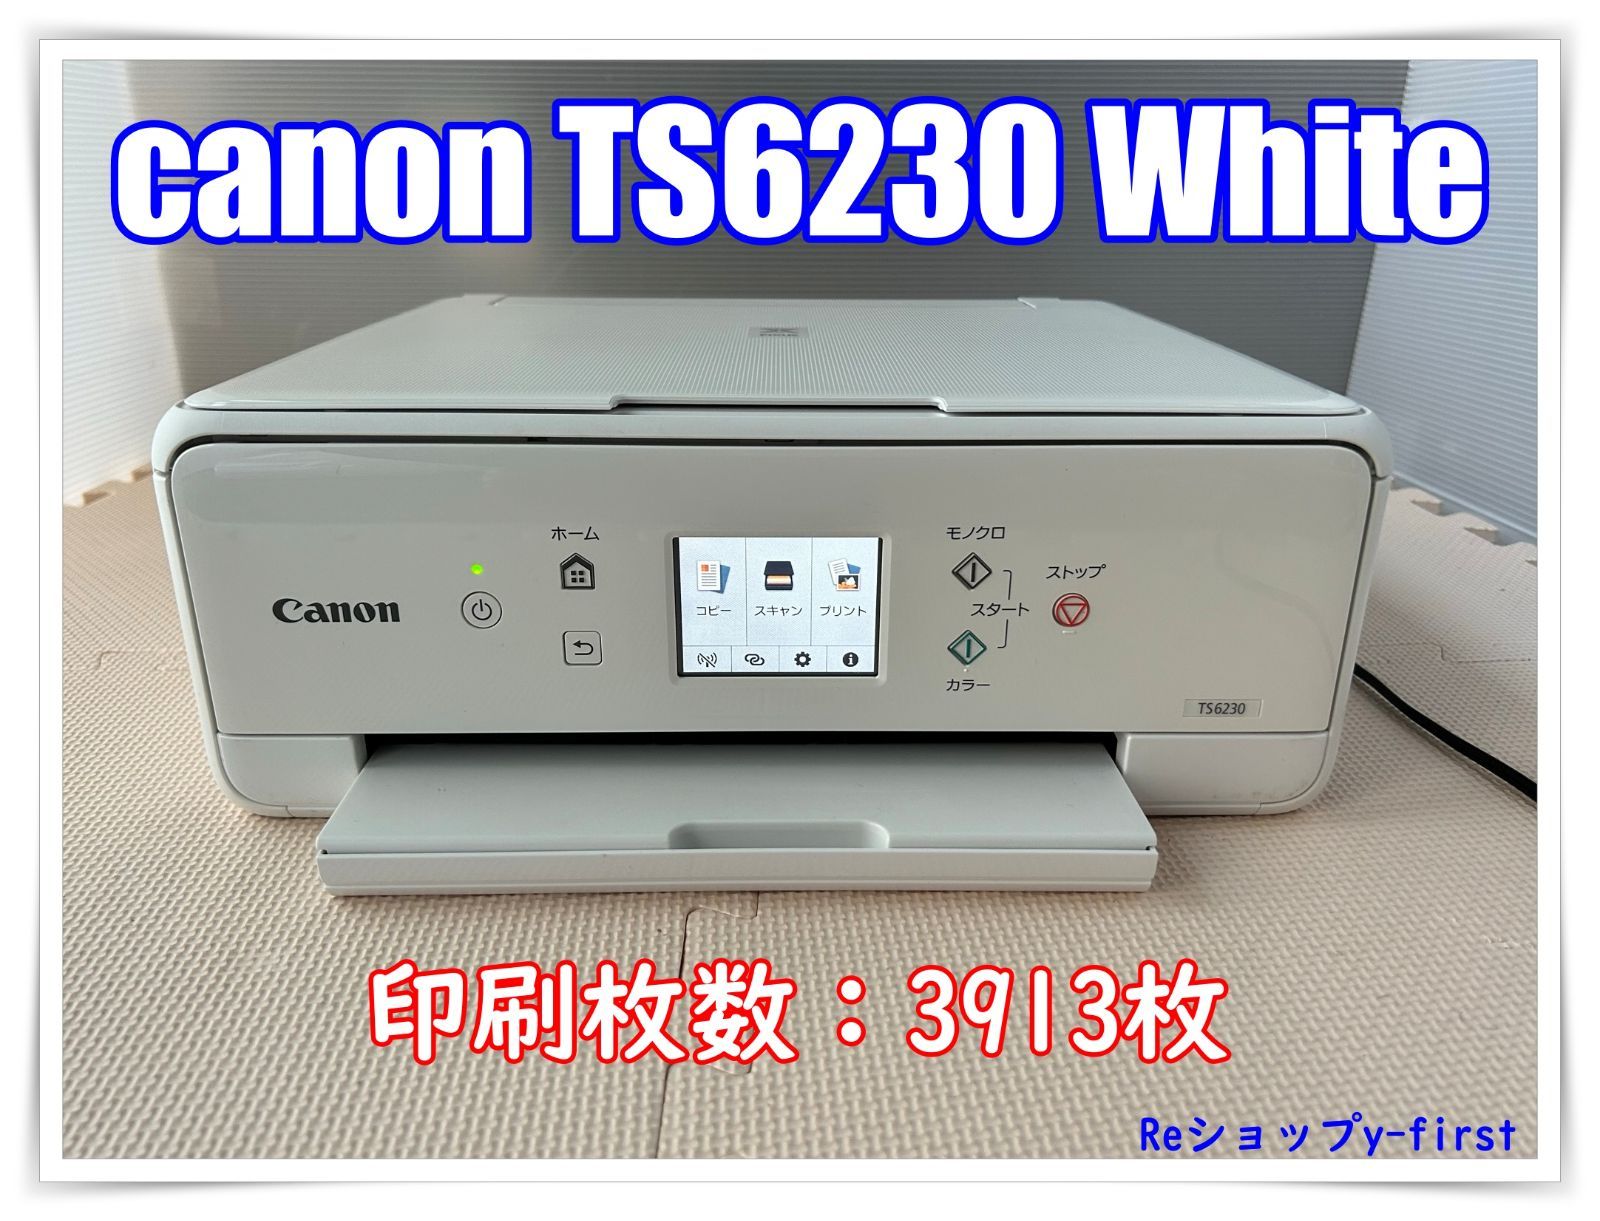 PC/タブレット未開封 プリンタ CANON PIXUS TS6230 ブラック 黒